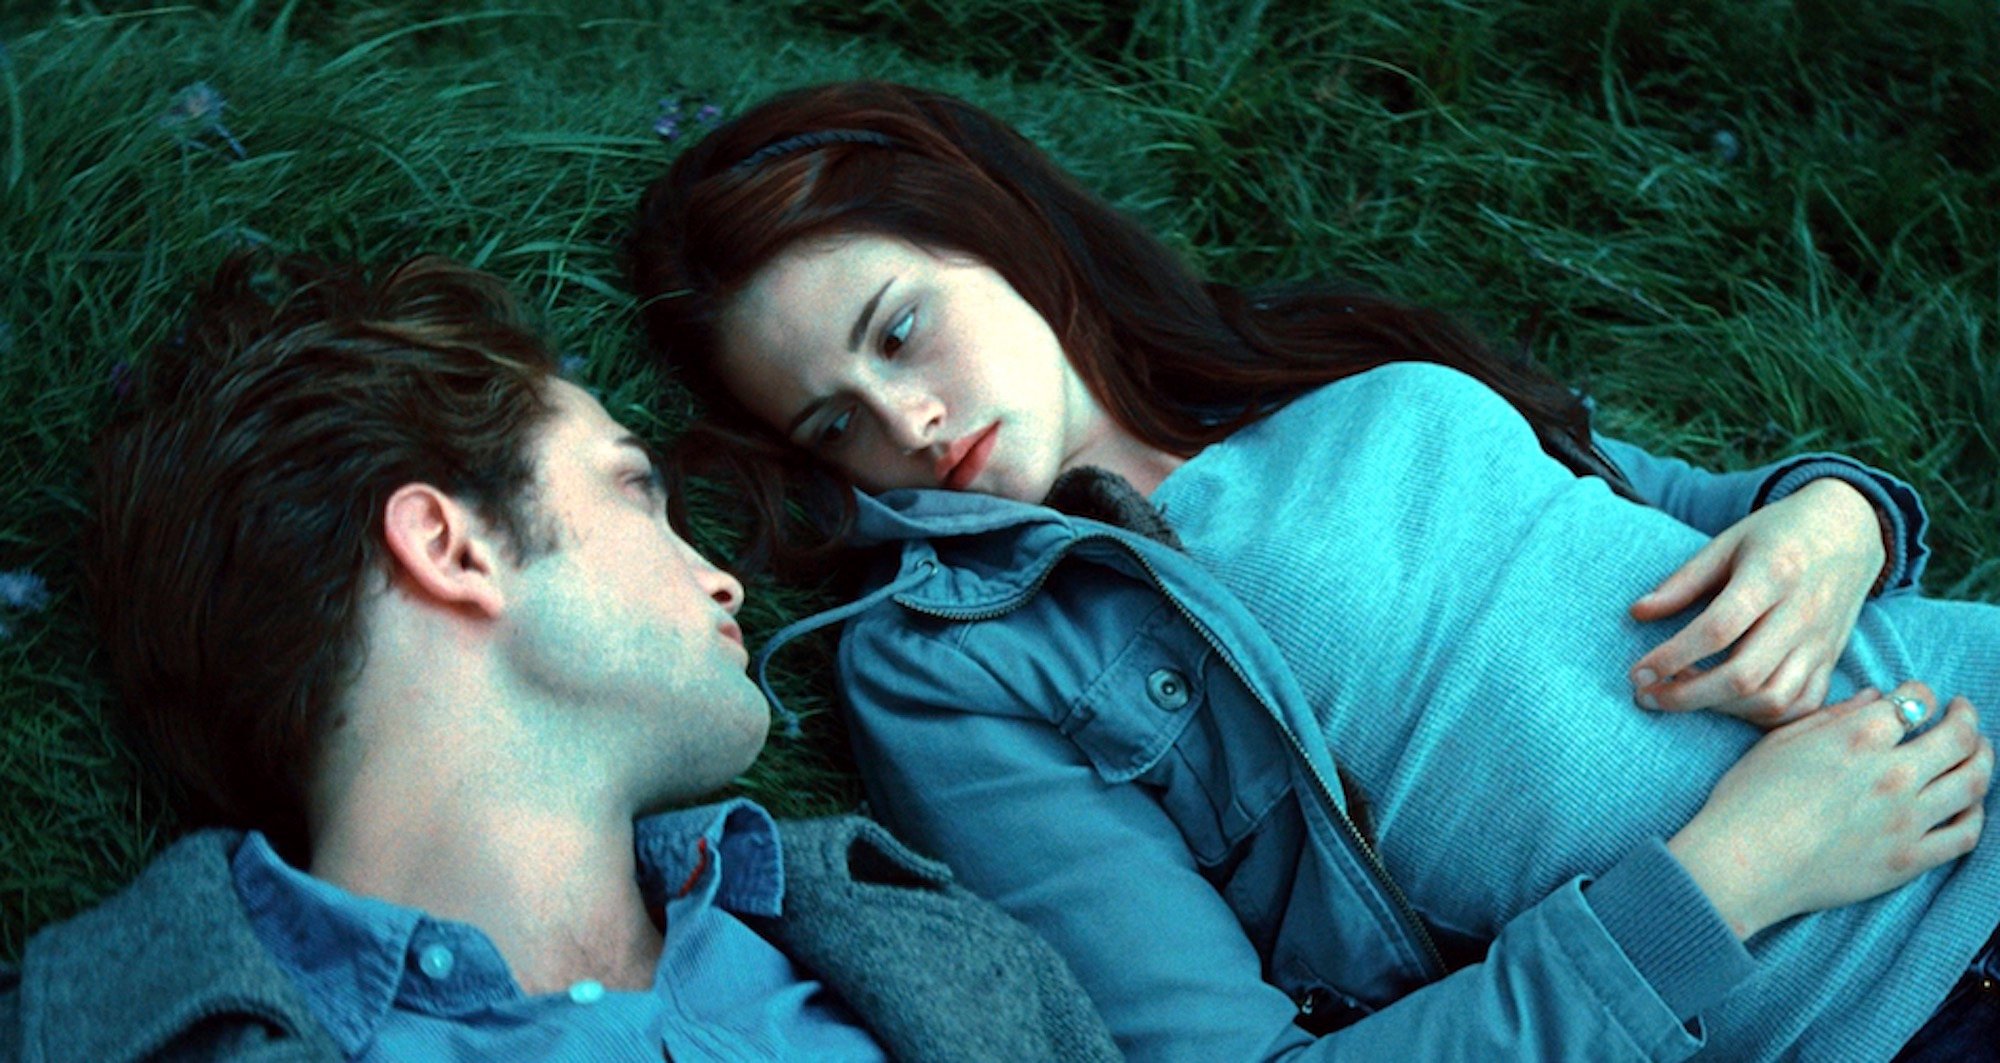 Edward Cullen (Robert Pattinson) and Bella Swan (Kristen Stewart) in the meadow in 'Twilight.'